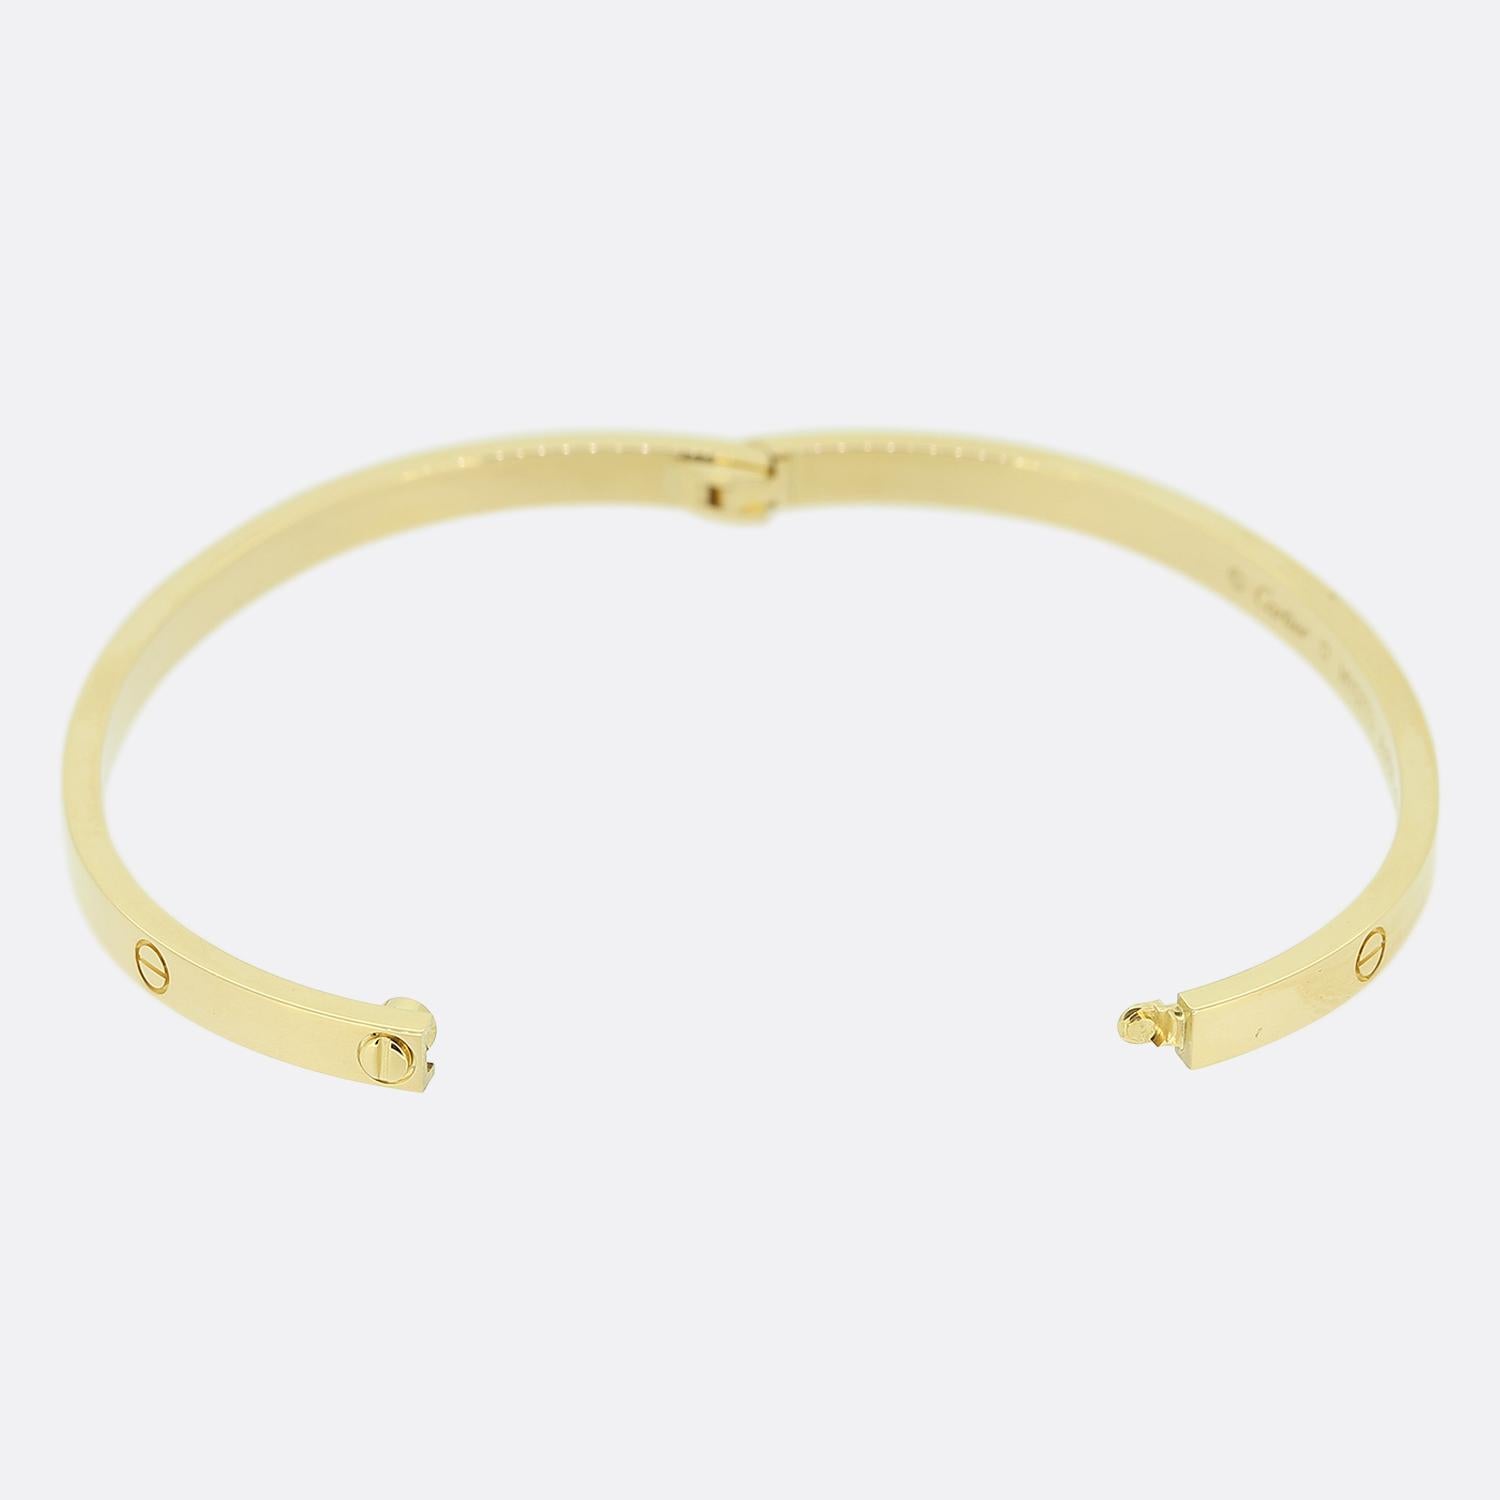 Nous avons ici un bracelet en or jaune 18ct de la maison de joaillerie de luxe de renommée mondiale Cartier. Ce bracelet fait partie de la collection LOVE et présente le motif iconique de la vis sur tout le pourtour extérieur. Il s'agit du modèle le